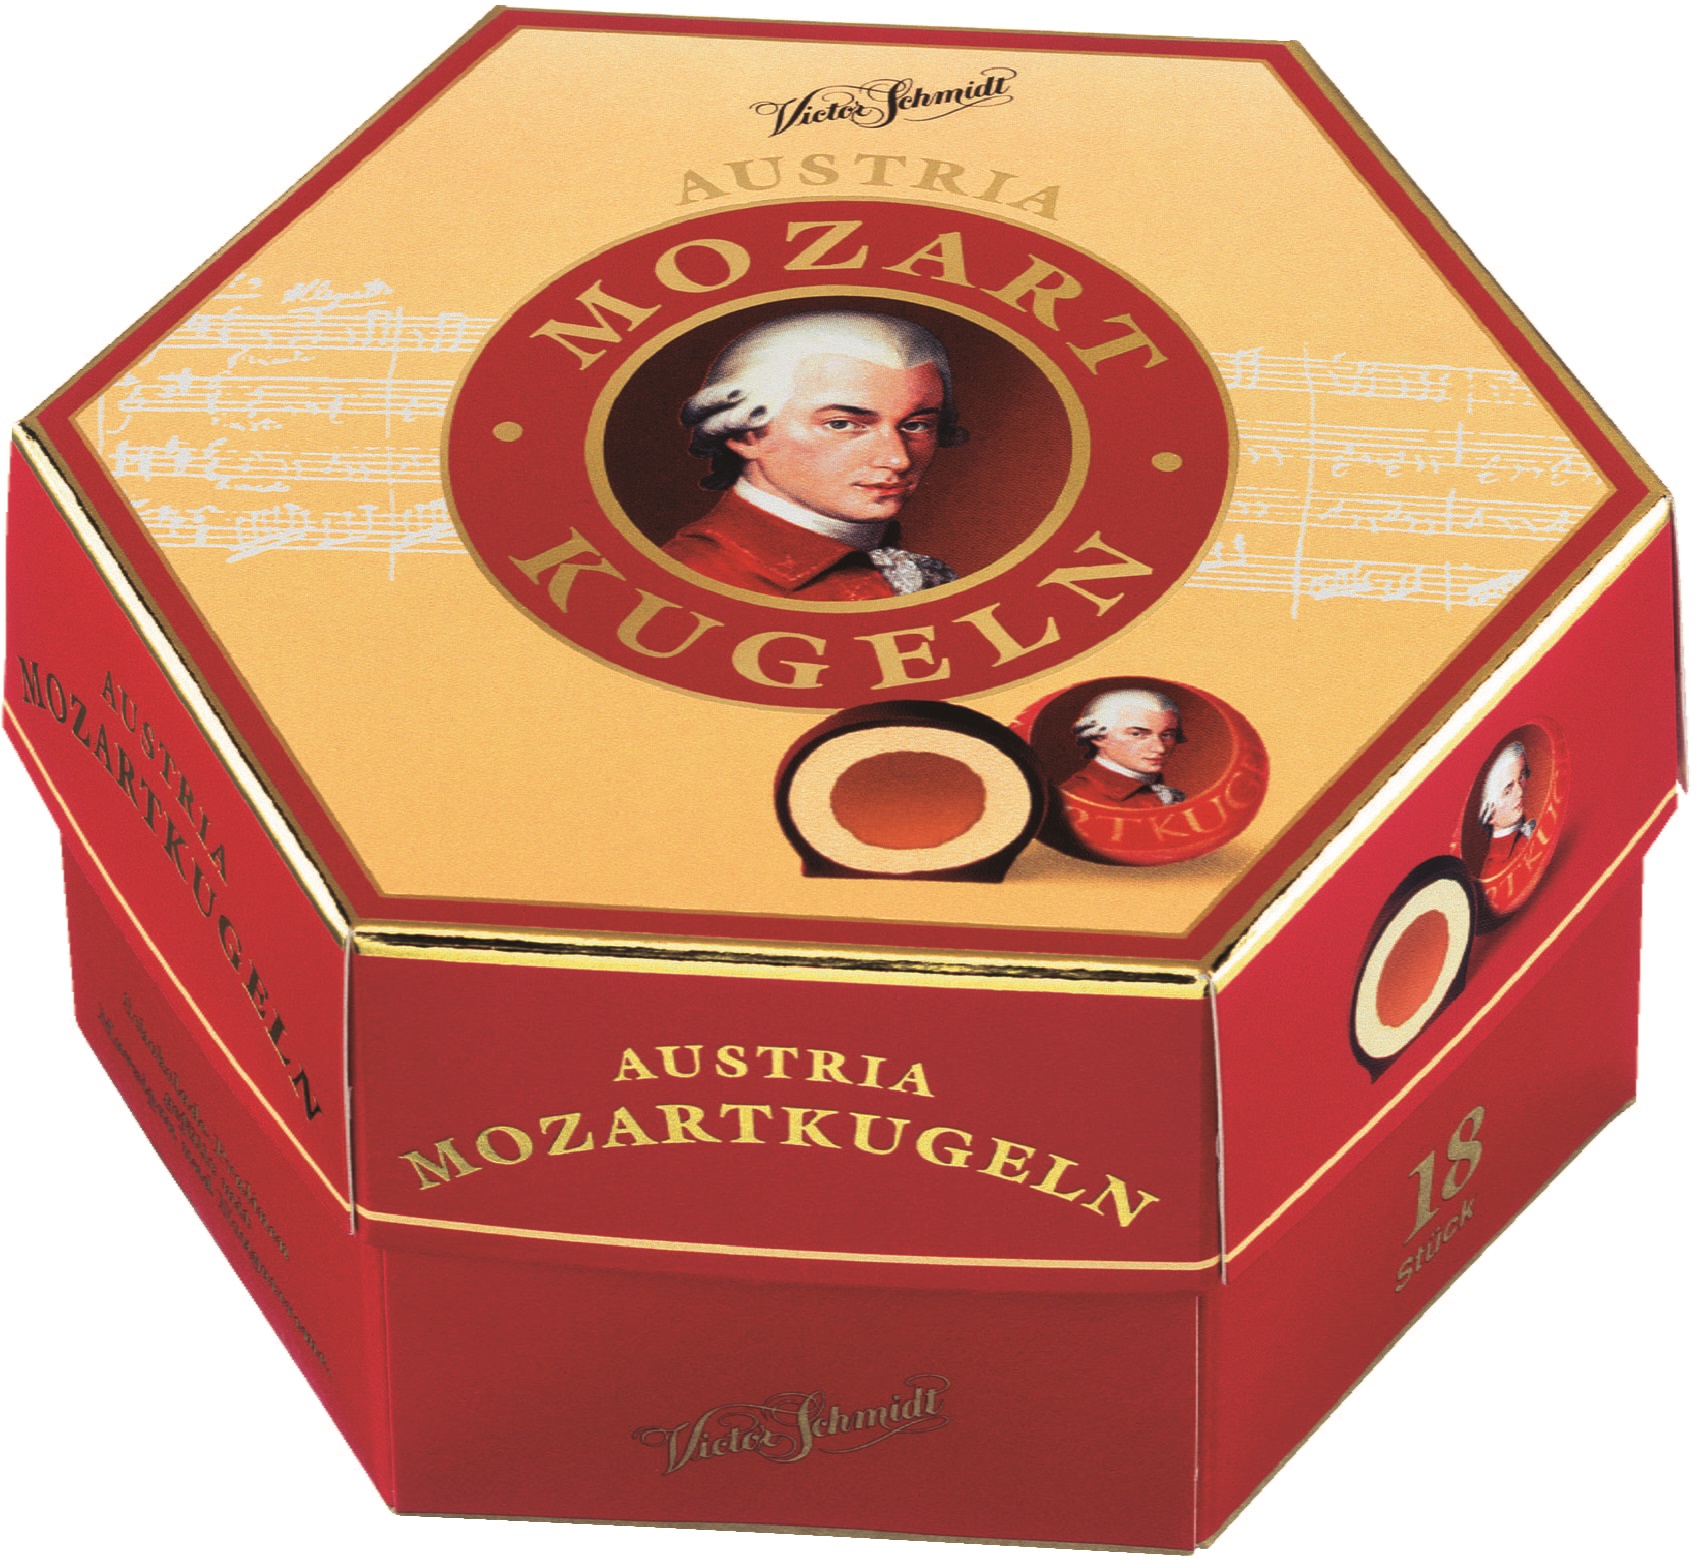 Krüger Victor Schmidt Bombones de chocolate rellenos de mazapán